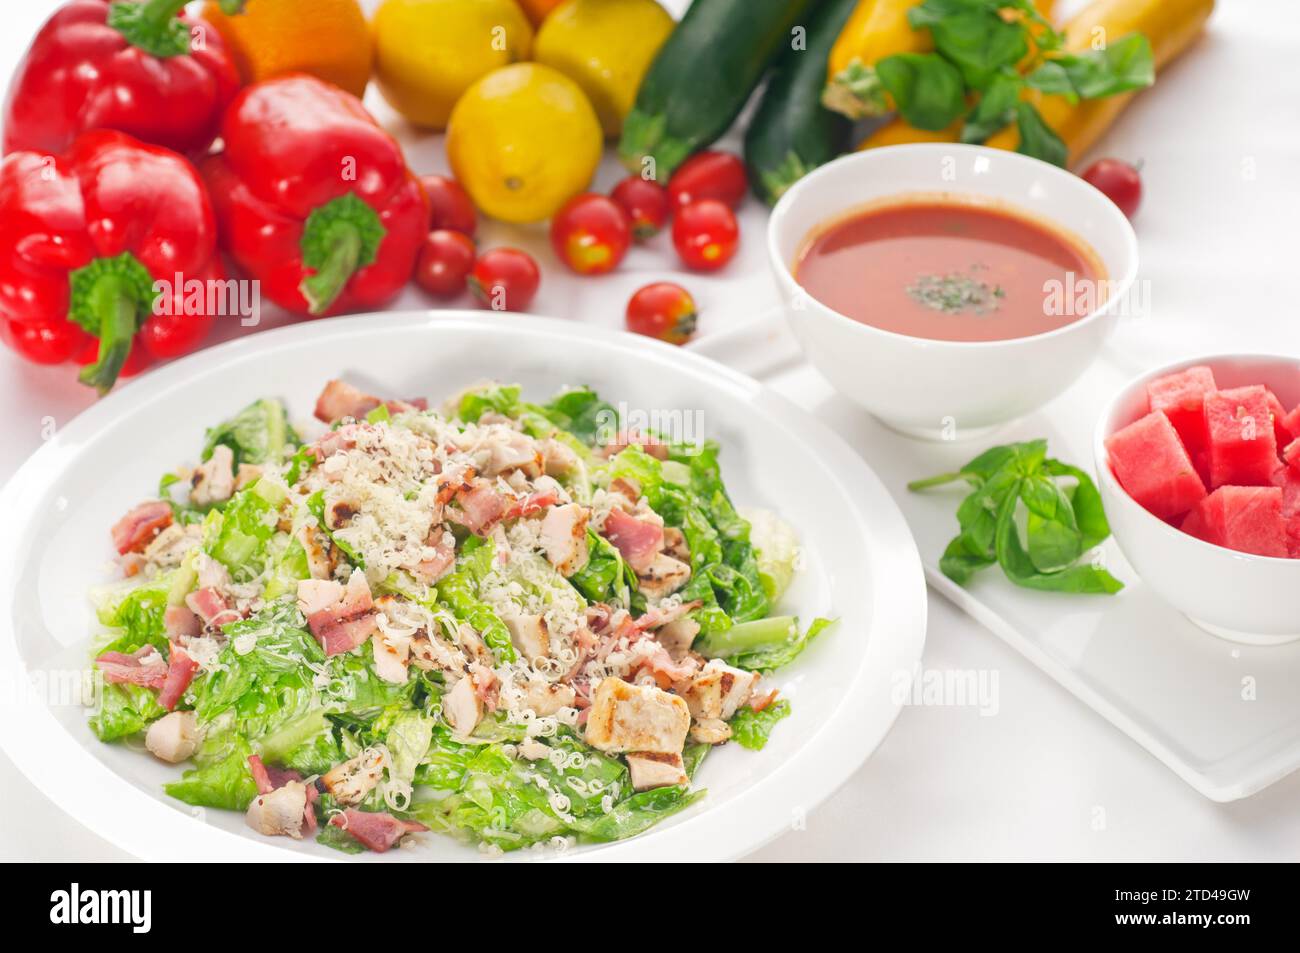 Frischer klassischer caesar-Salat, gesunde Mahlzeit, KÖSTLICHERE SPEISEN IM PORTFOLIO, Lebensmittelfotografie Stockfoto